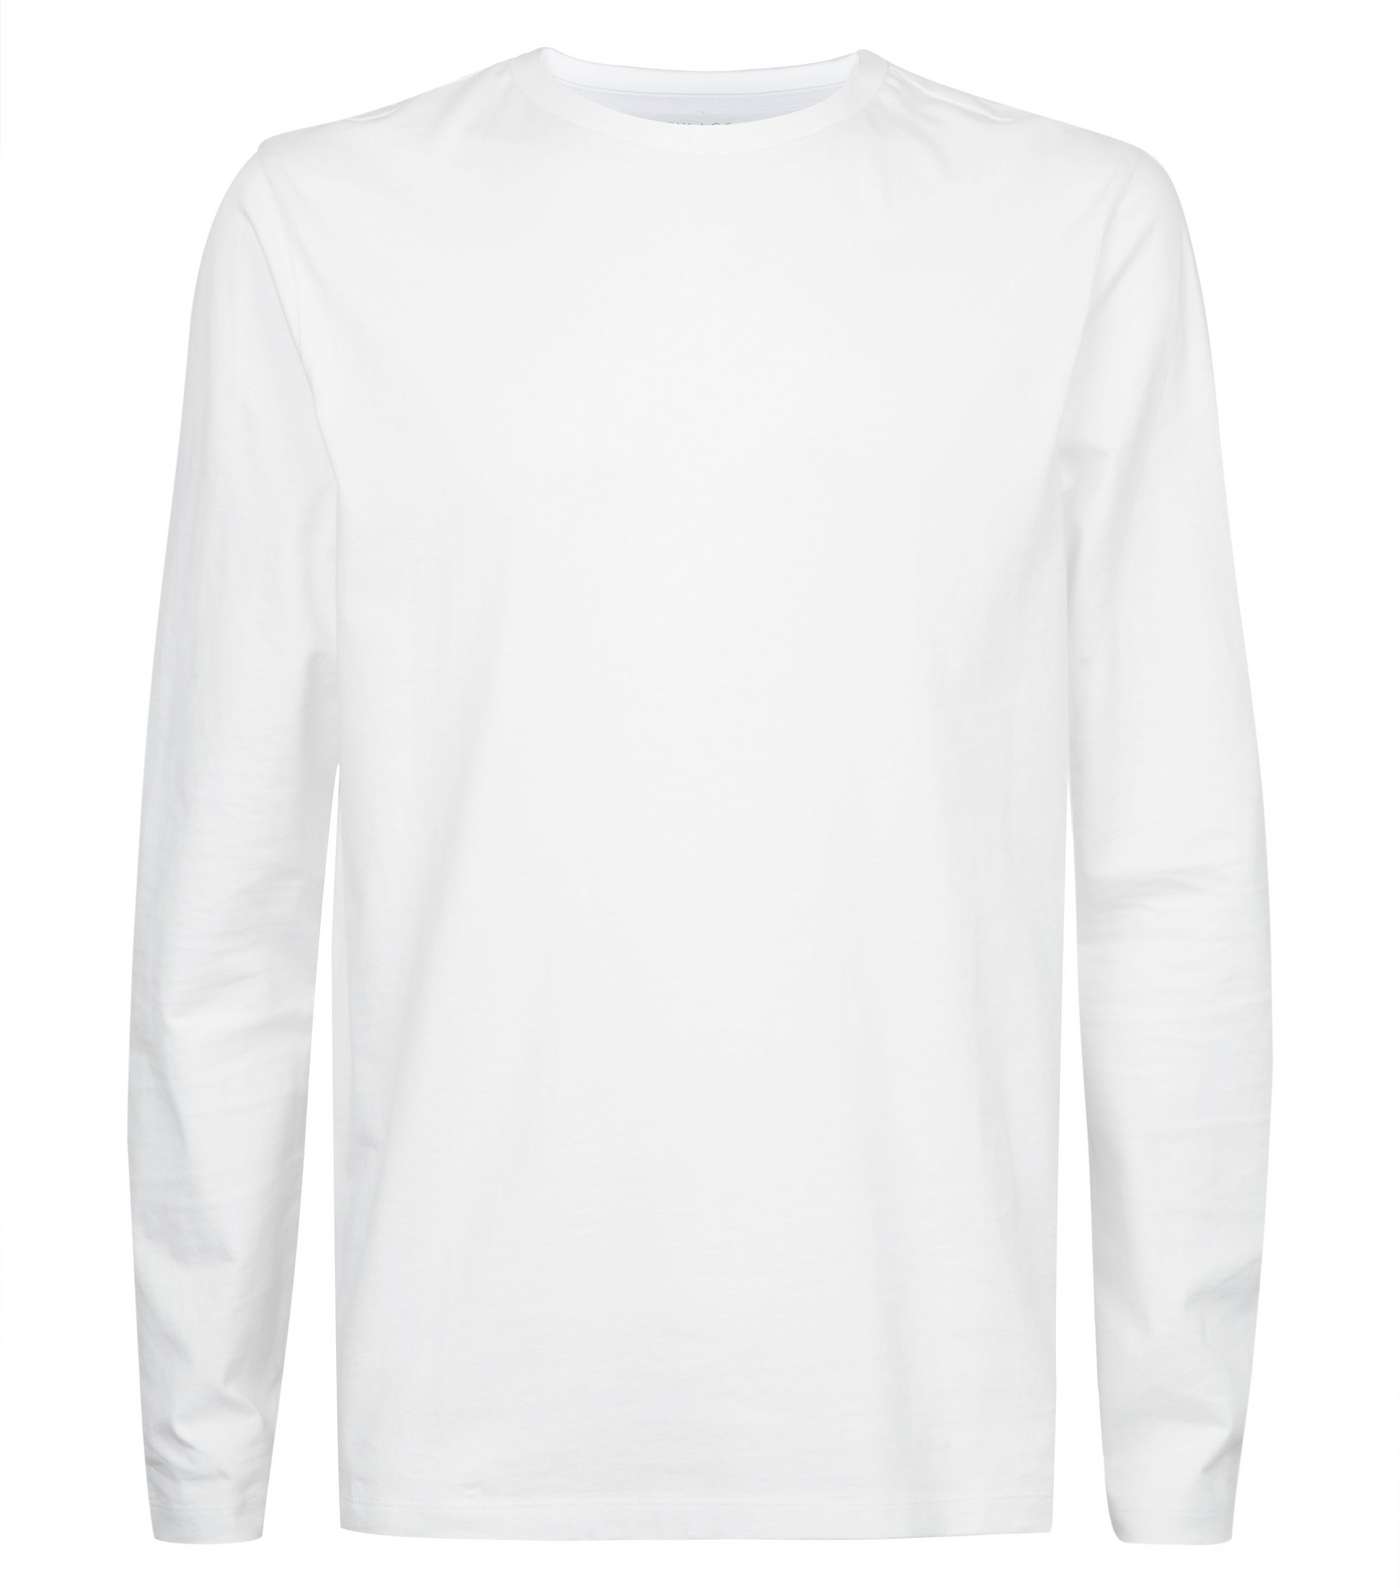 White Long Sleeve Crew Neck T-Shirt Image 4